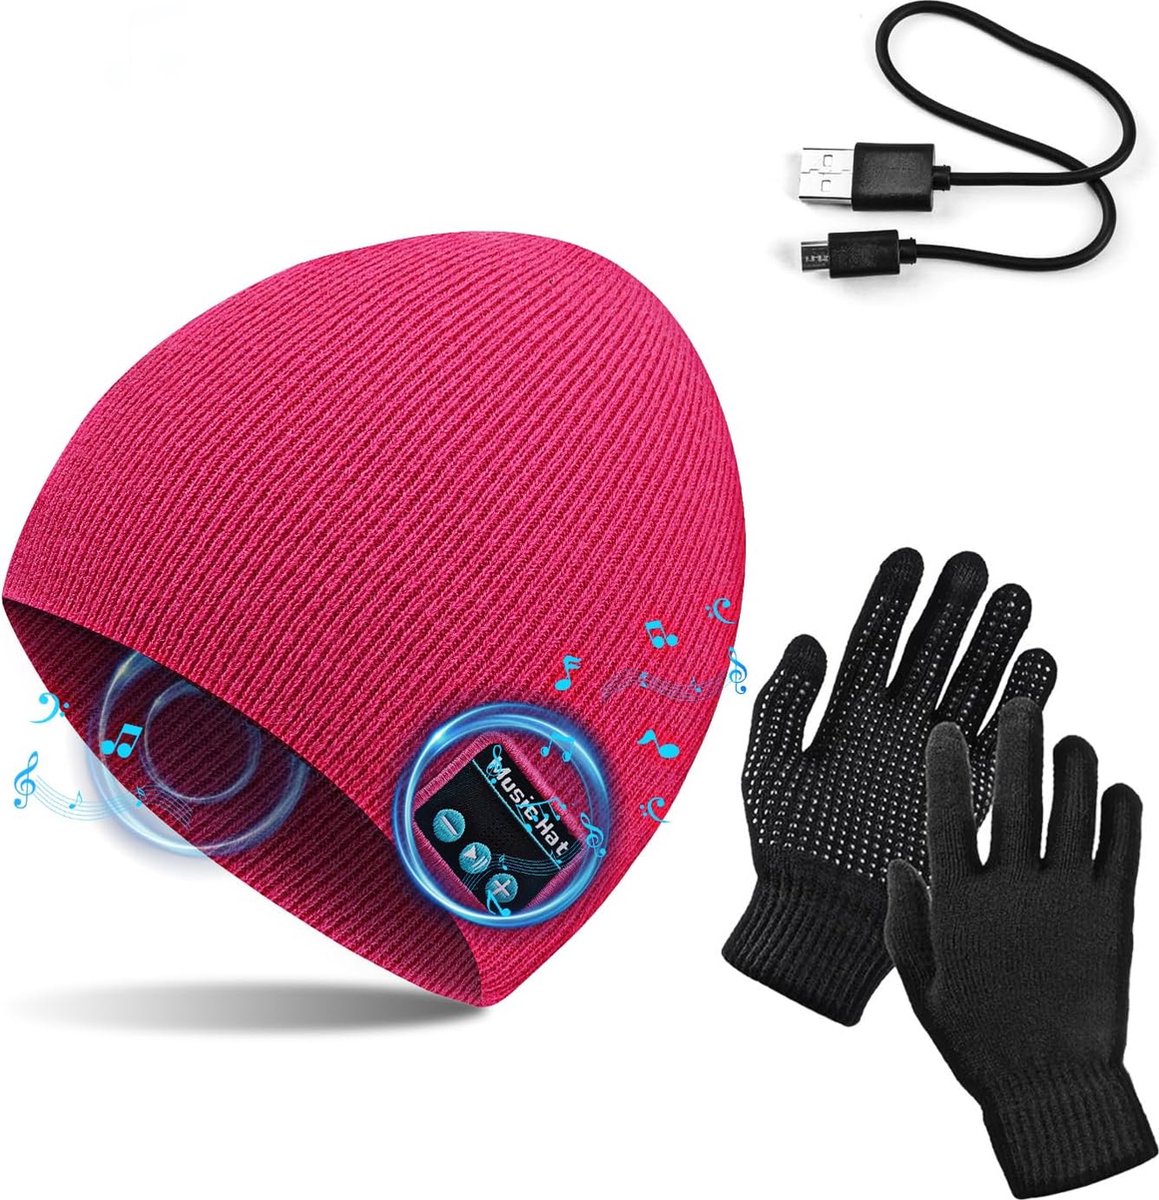 Roze one size muts met touch handschoenen, winter warm gebreide draadloze Bluetooth V5.0 hoofdtelefoon muziek USB - super warm gevoerd met fleece laag - voor hardlopen, wandelen, fietsen, wintersport, reizen